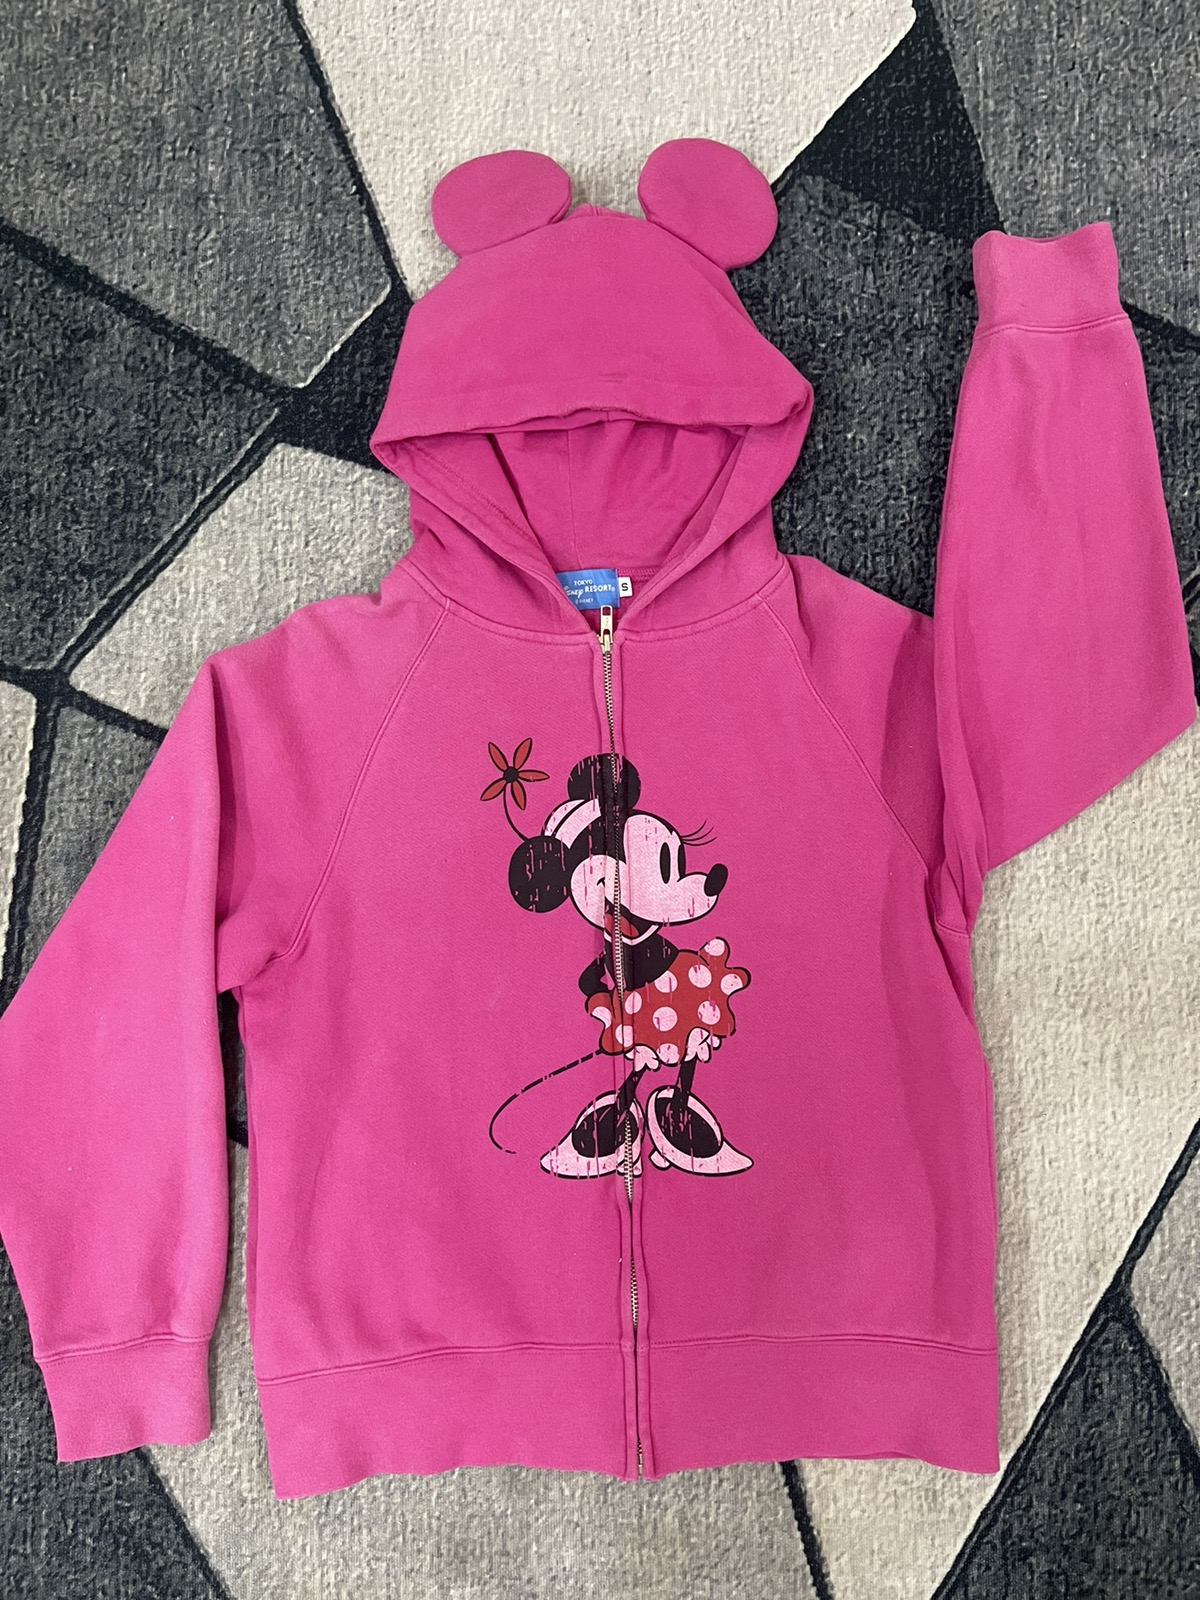 Mickey Mouse - Minnie / Disney Zip Up Hoodie Japan Designer / Vintage - 2